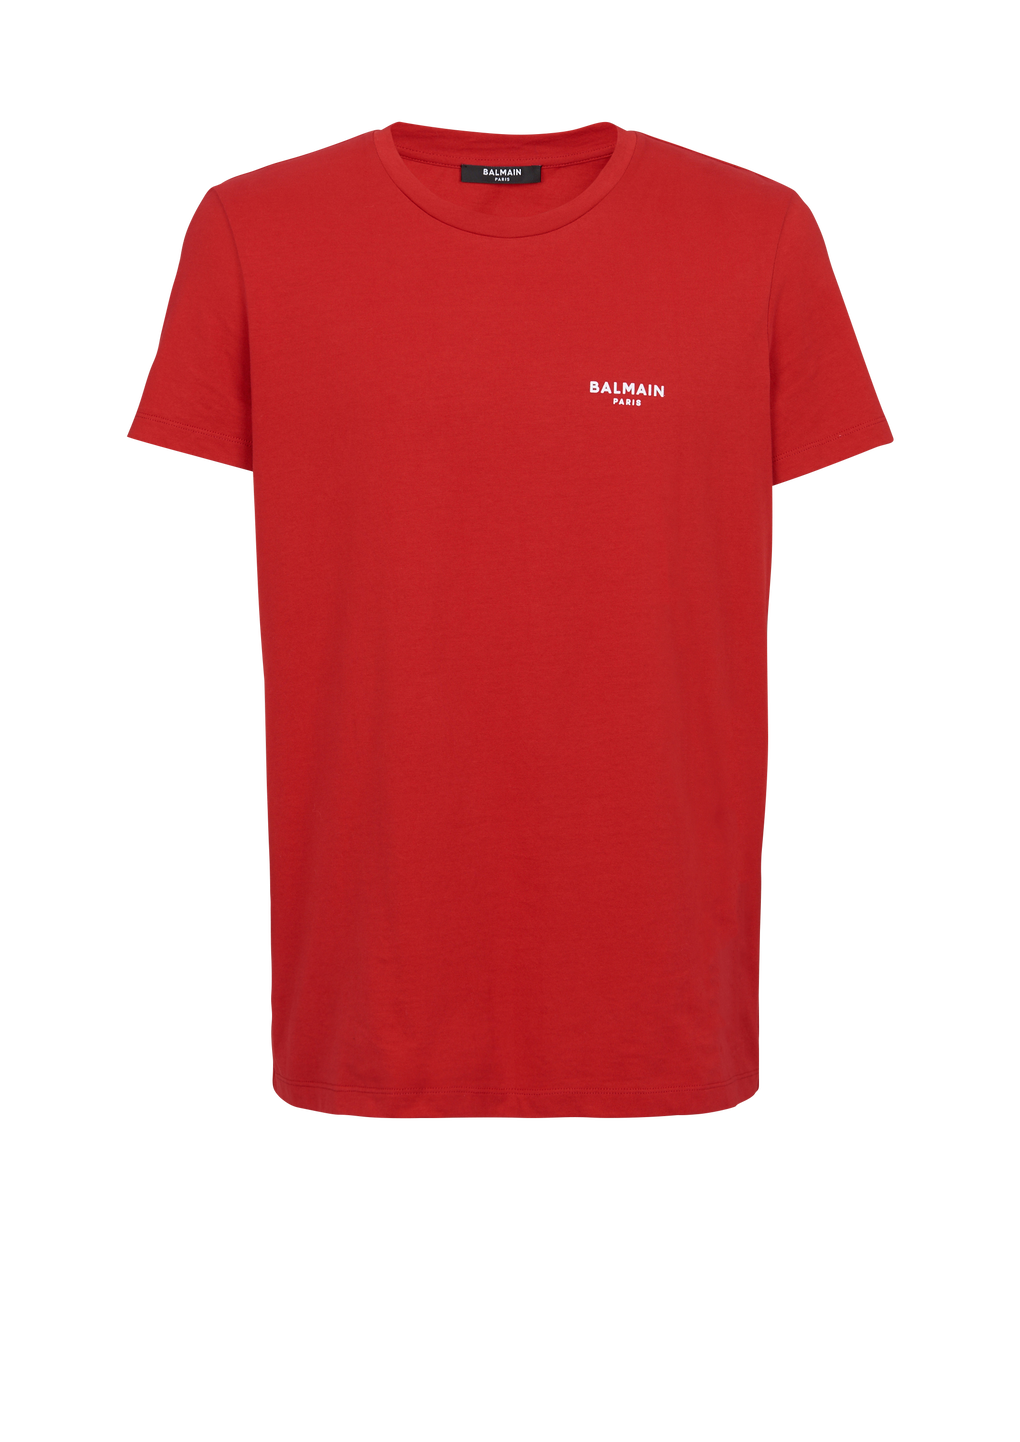 T-shirt en coton floqué petit logo Balmain Paris, rouge, hi-res